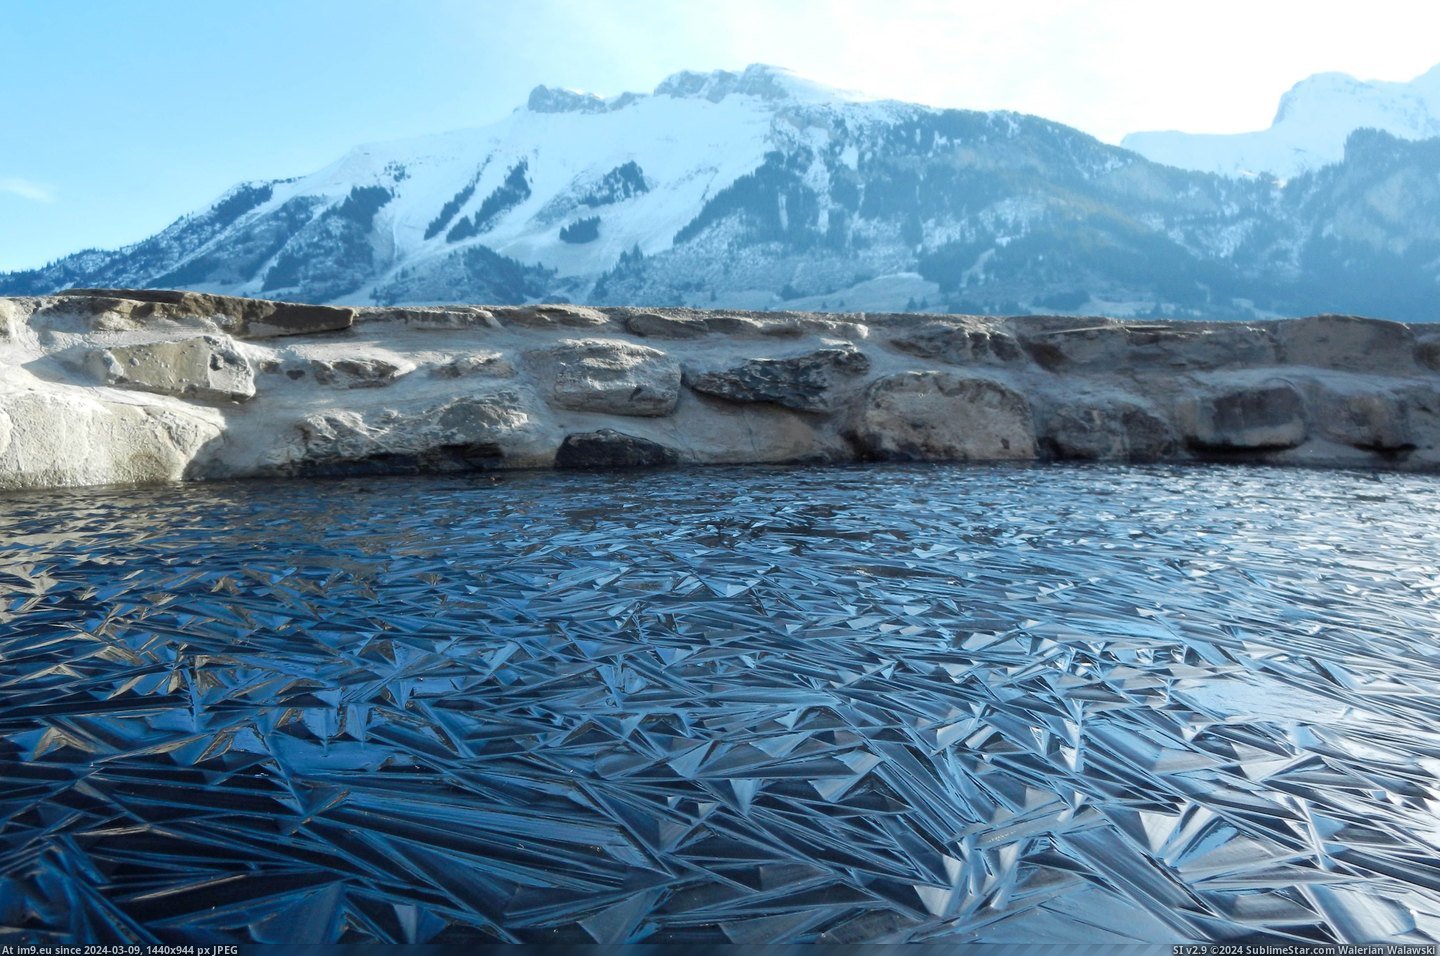 #Frozen #Pond #Switzerland [Pics] Frozen pond in Switzerland Pic. (Изображение из альбом My r/PICS favs))